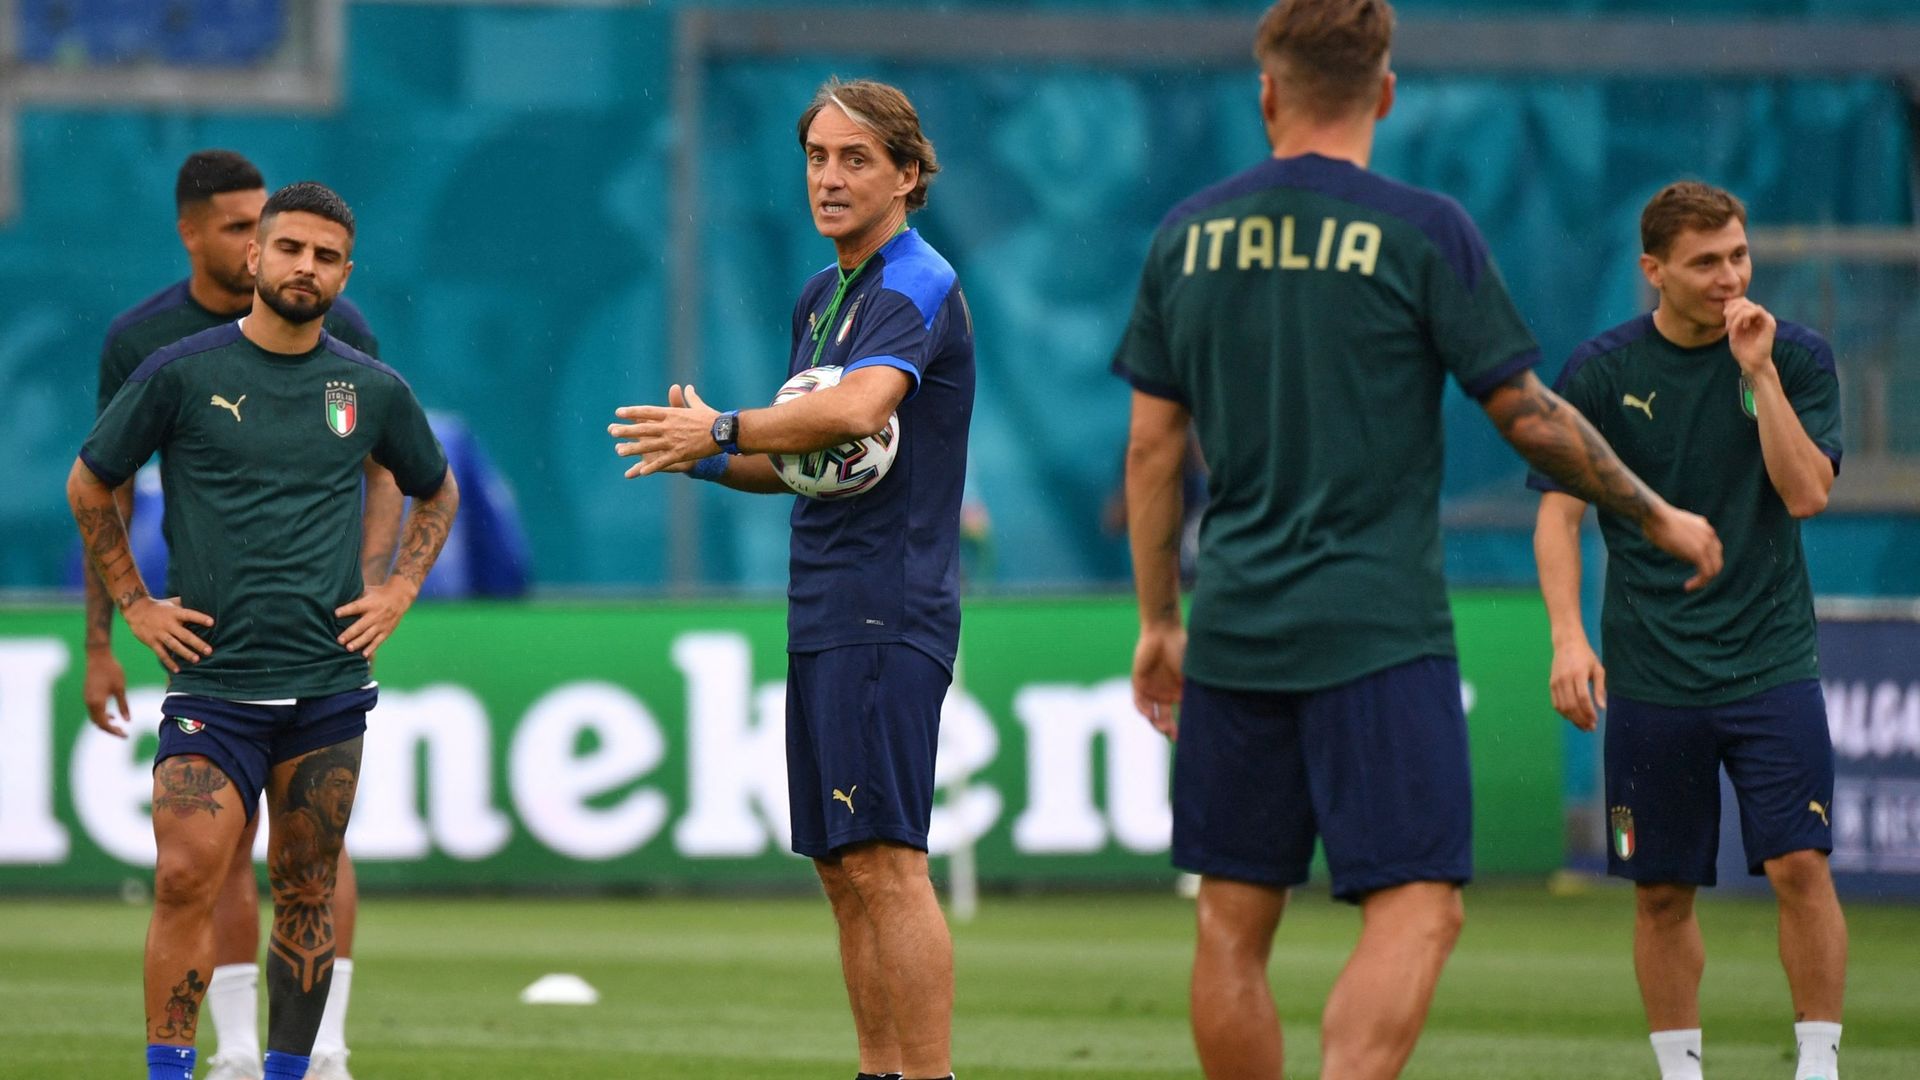 L’Italie ouvrira l’Euro 2020, vendredi, à Rome, contre la Turquie. "Nous essayerons de faire de notre mieux. Le premier match est toujours le plus difficile, mais nous devrons être libres mentalement", a déclaré le sélectionneur italien Roberto Mancini.